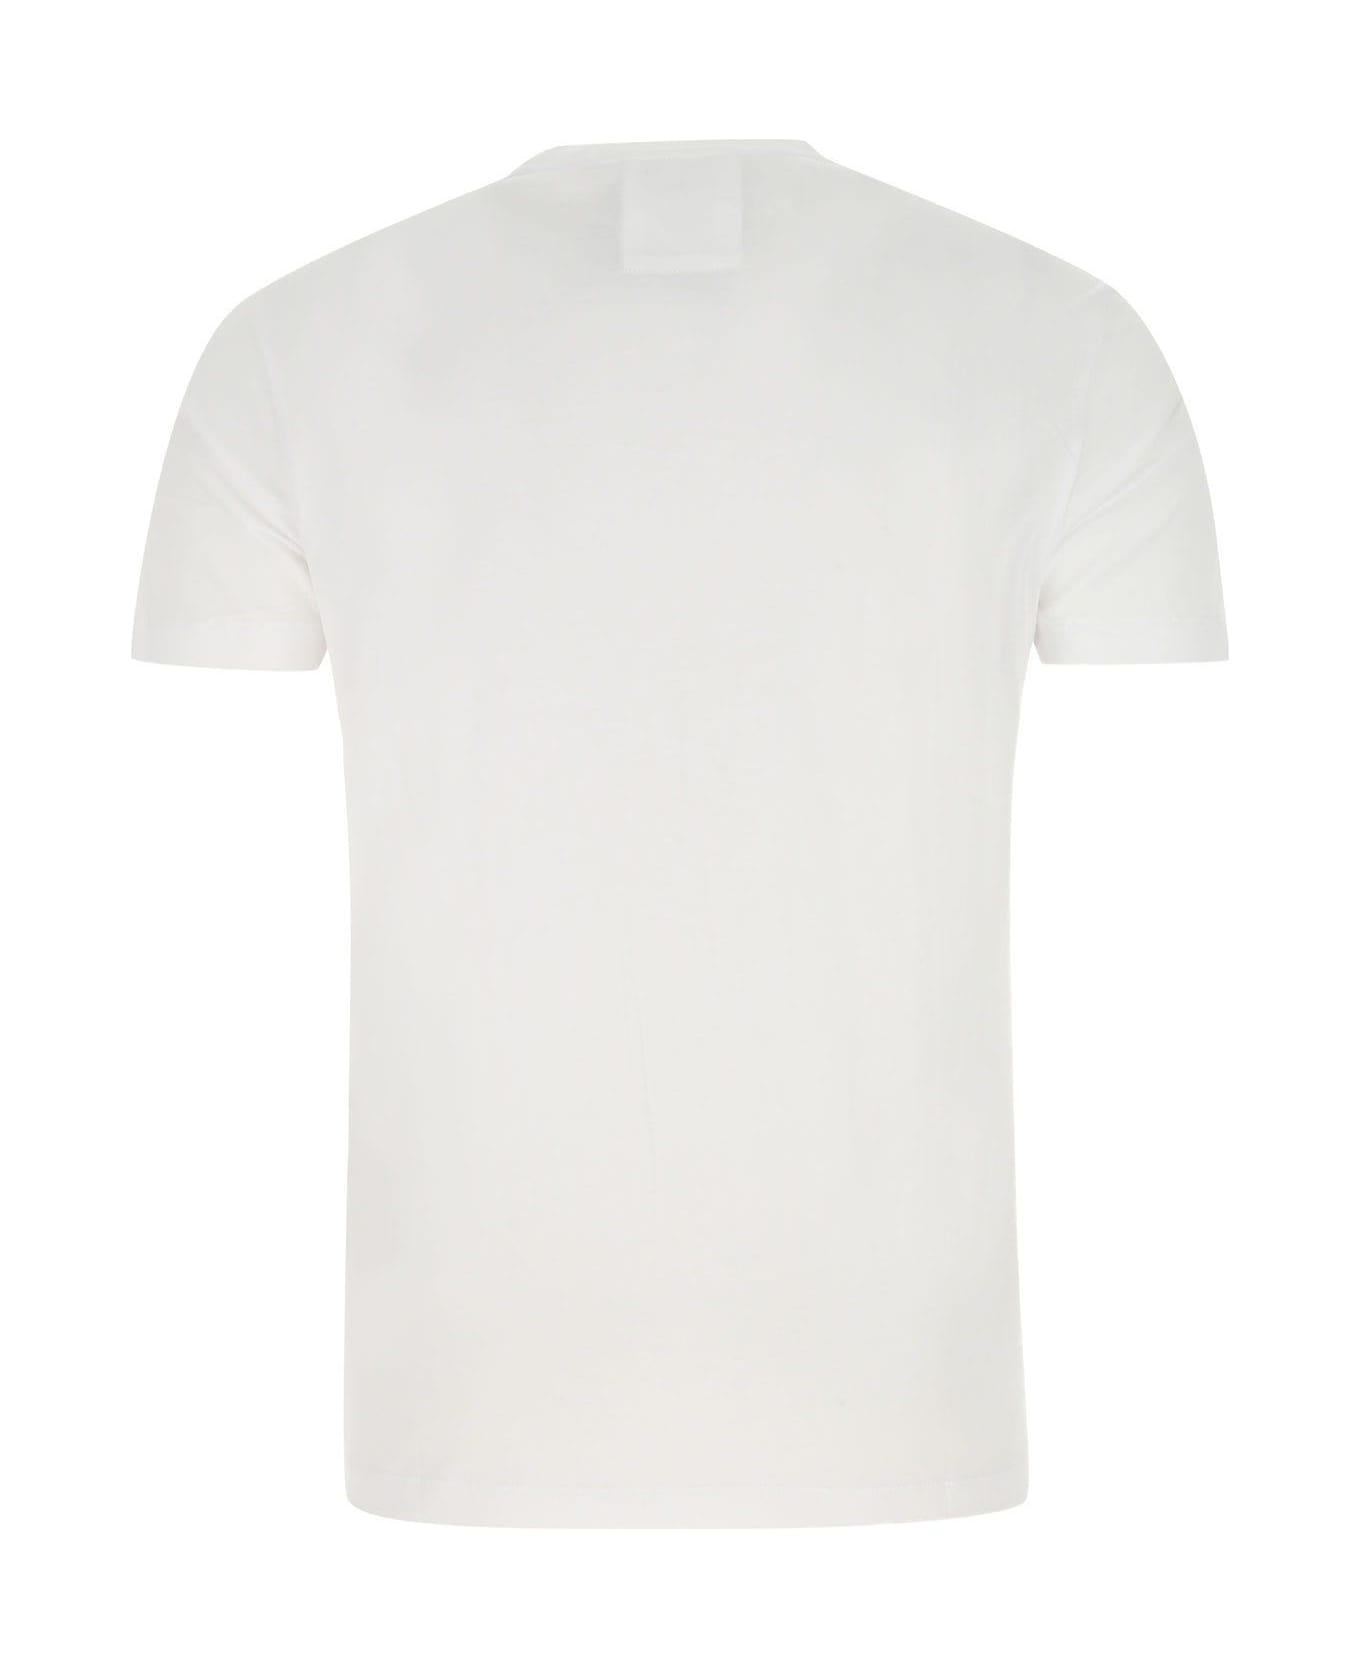 Emporio Armani White Cotton T-shirt - White